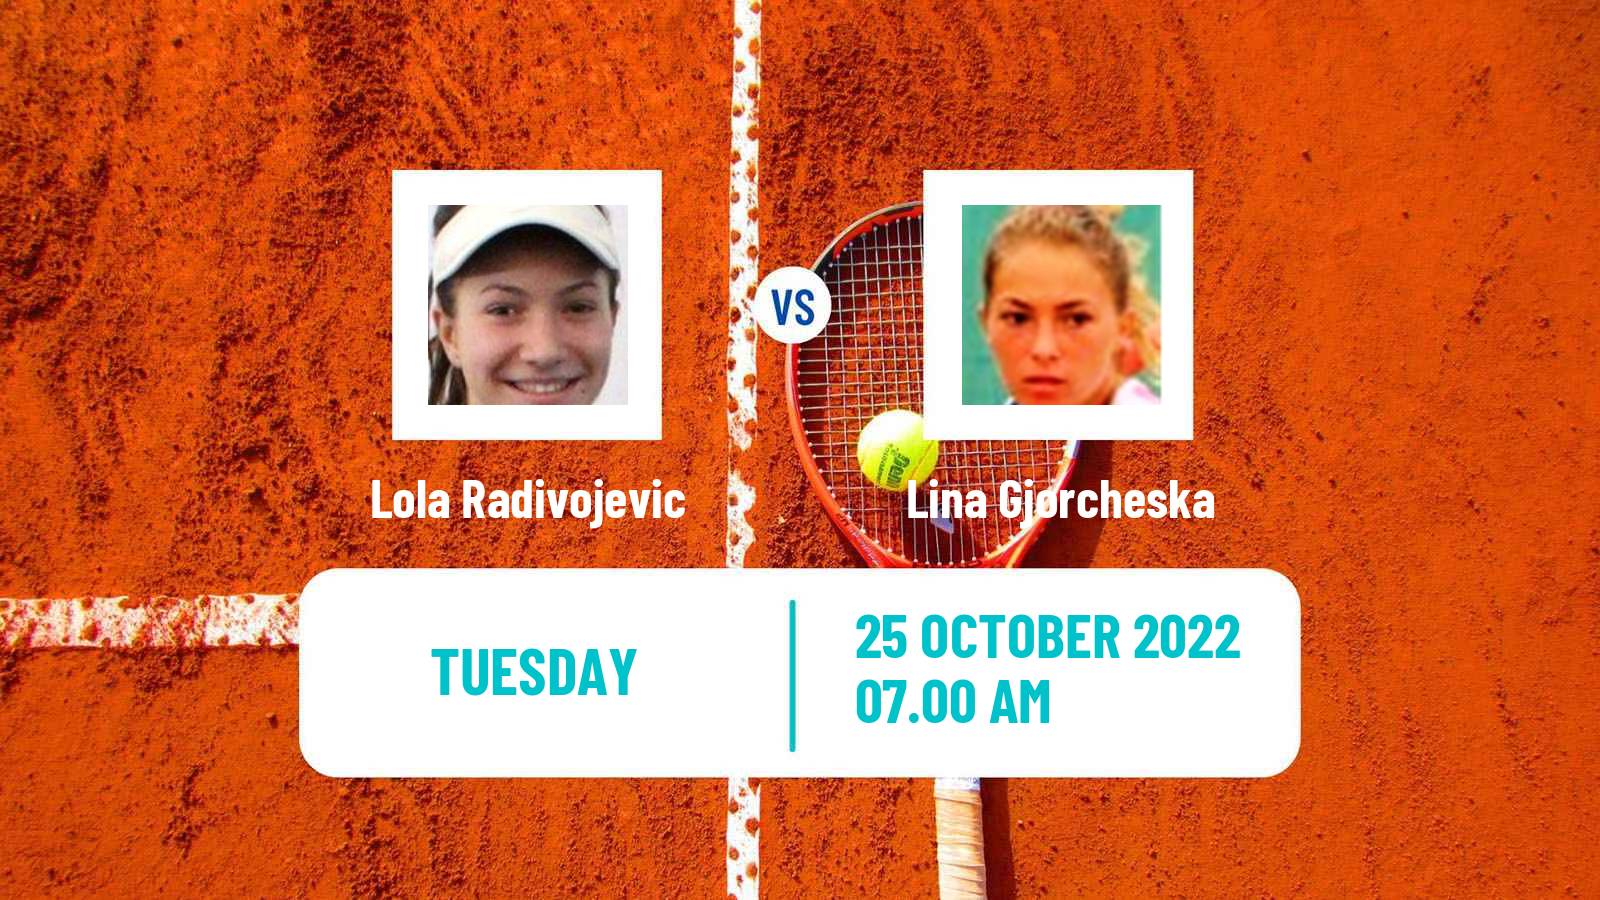 Tennis ITF Tournaments Lola Radivojevic - Lina Gjorcheska